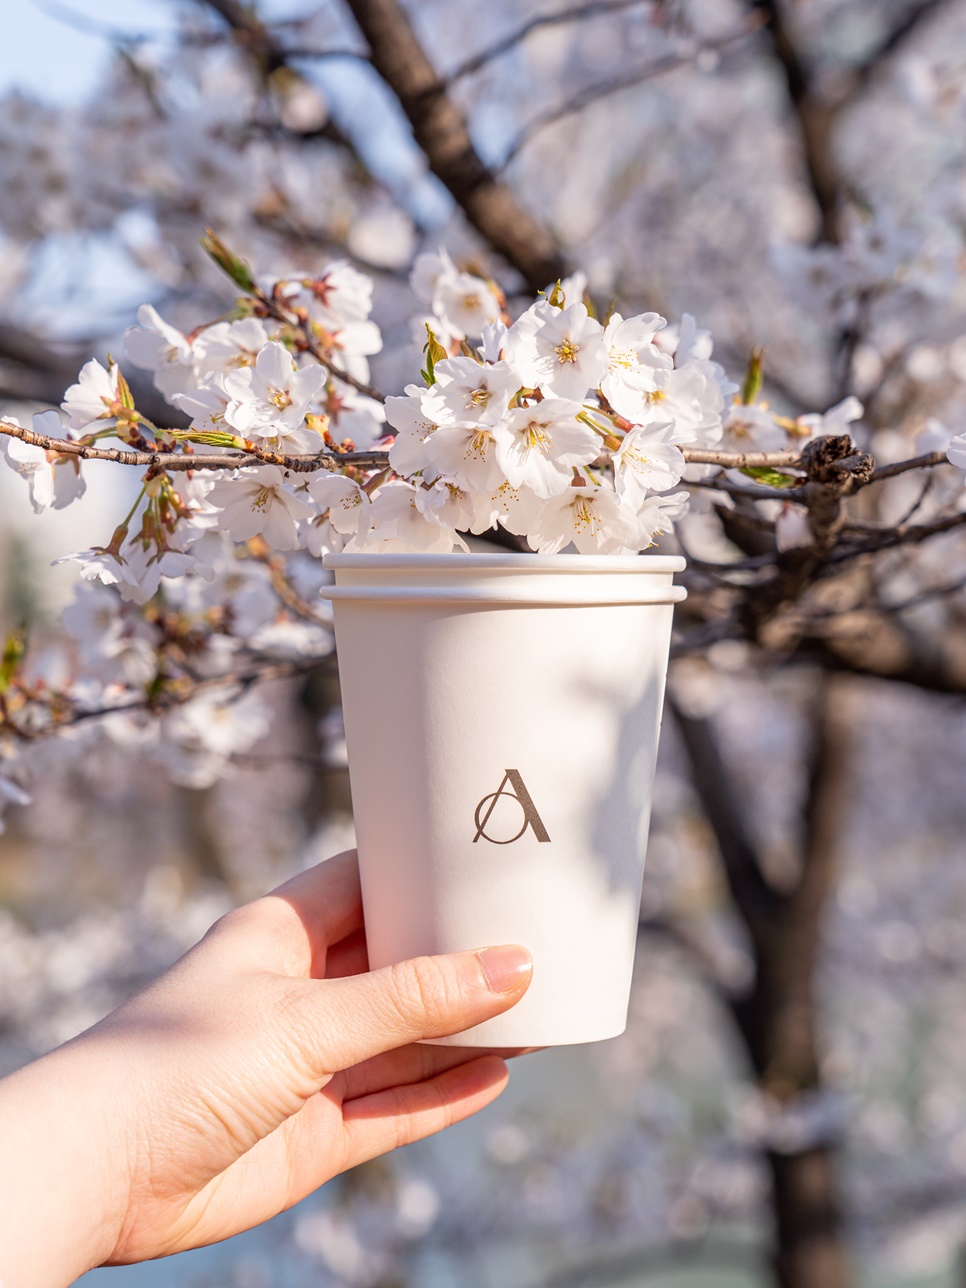 엔제리너스 테이크아웃 & 반미샌드위치 커피와 함께 벚꽃 피크닉